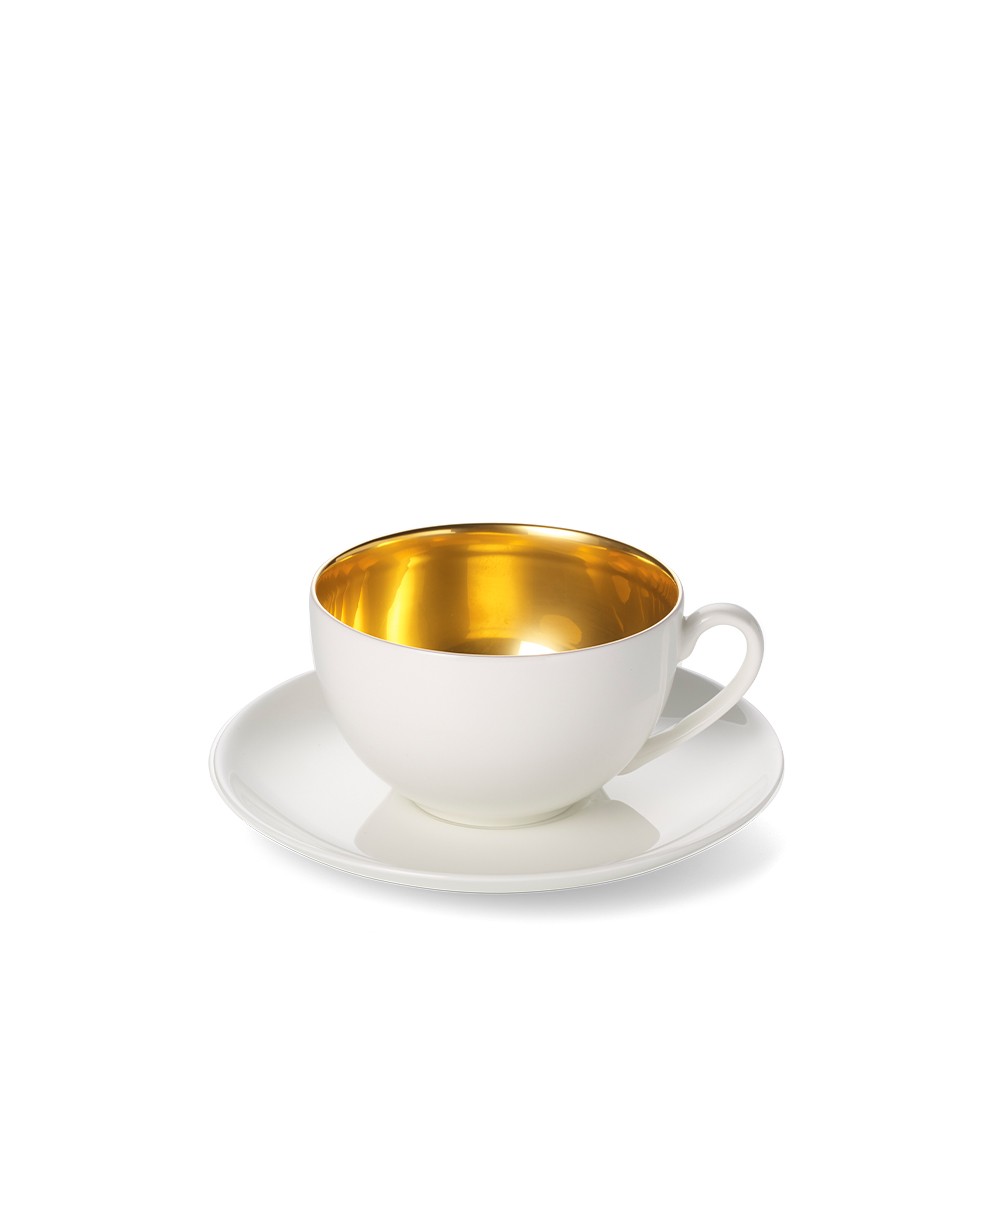 Hier sehen Sie: Set Espressotasse Goldrausch von Dibbern